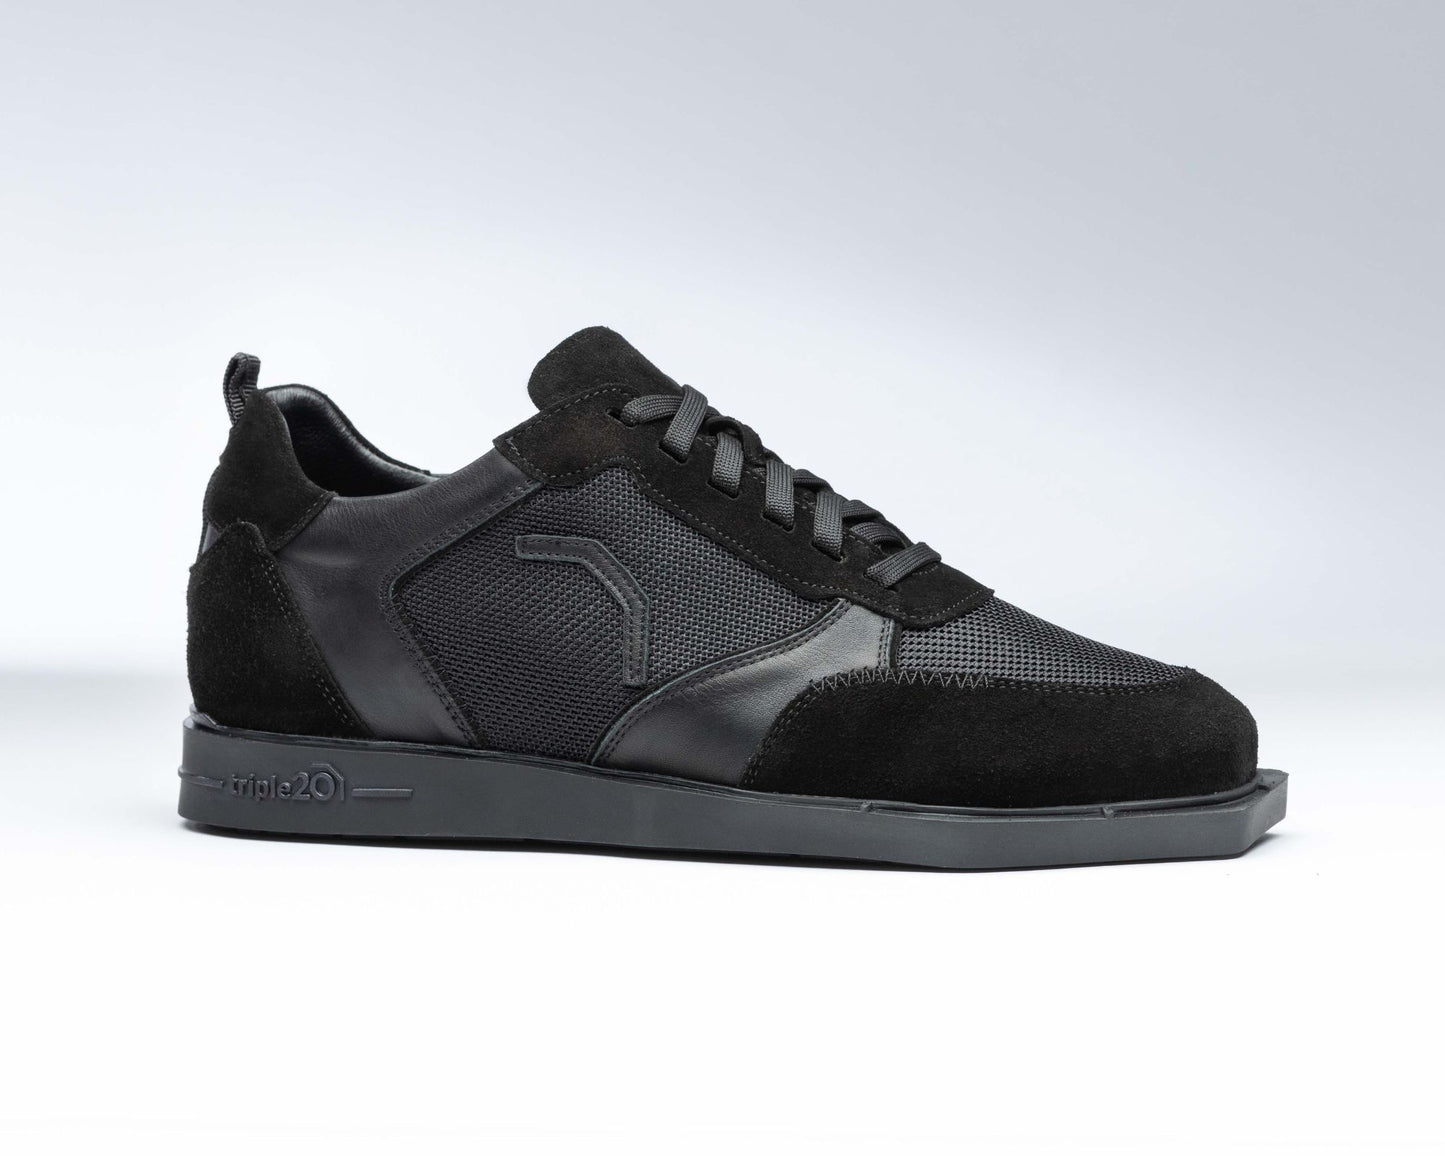 Seitenansicht eines rechten Schuhs. Es handelt sich hier um komplett schwarze Dartschuhe von triple20 mit patentierter Spezialsohle, die ebenfalls schwarz ist.